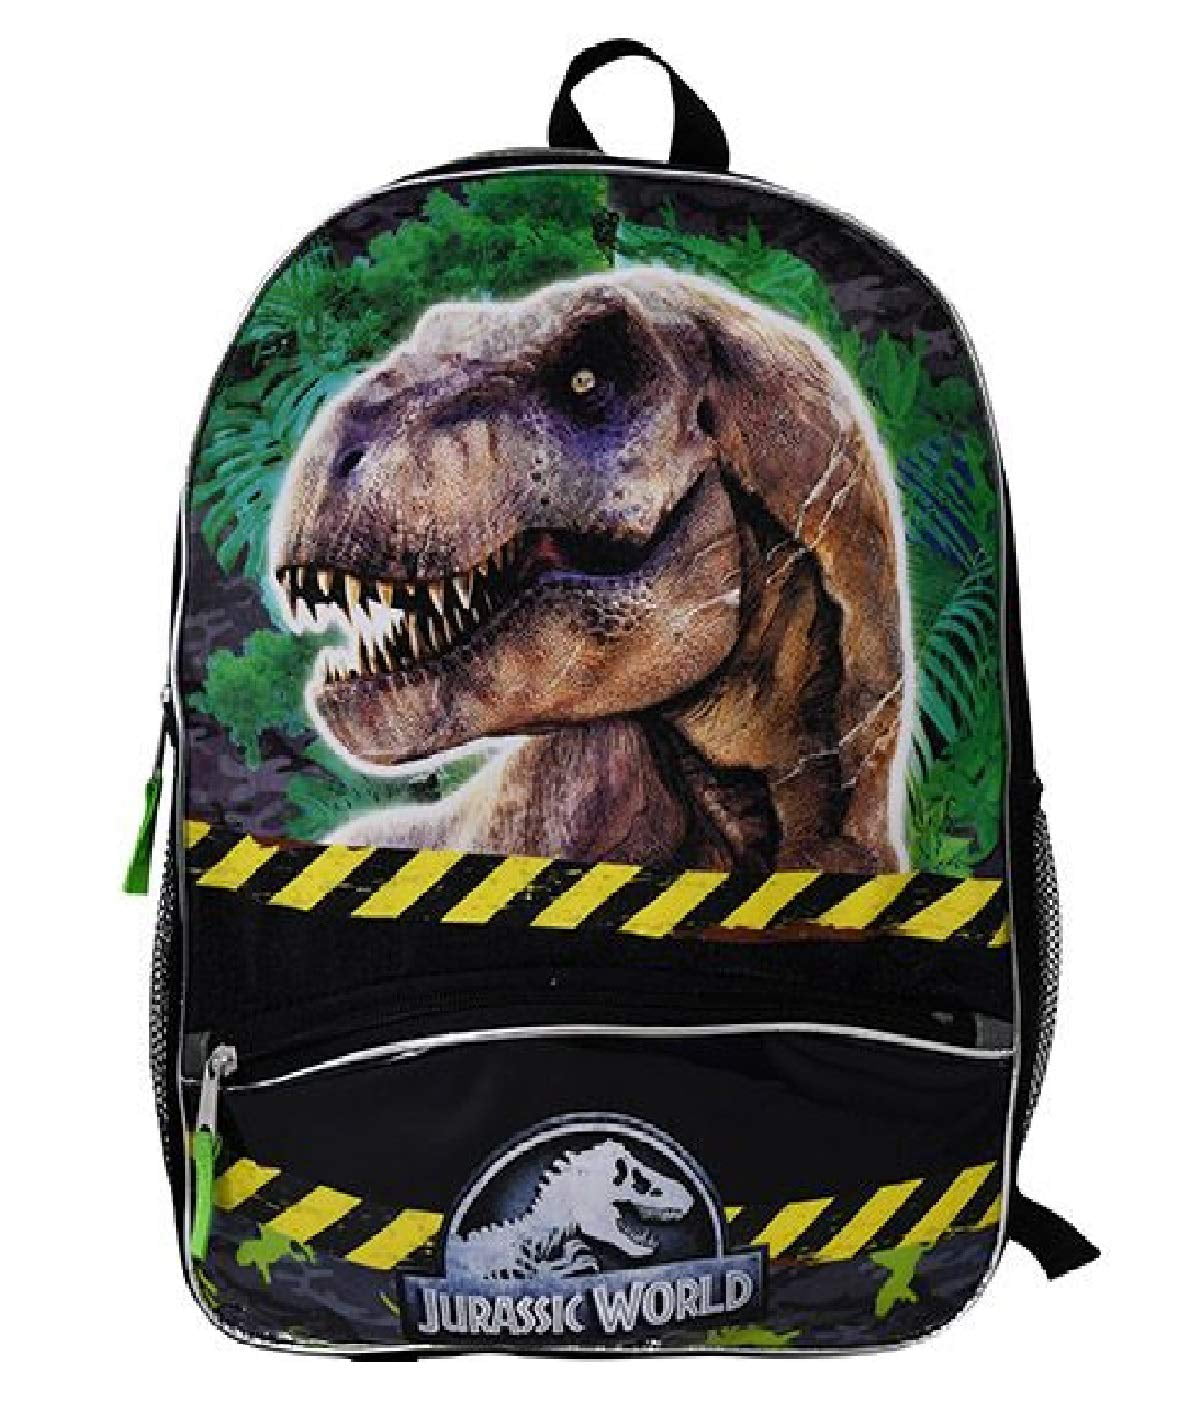 Fast Forward - Backpack - Jurassic Park - T-Rex New JUCA - Walmart.com ...